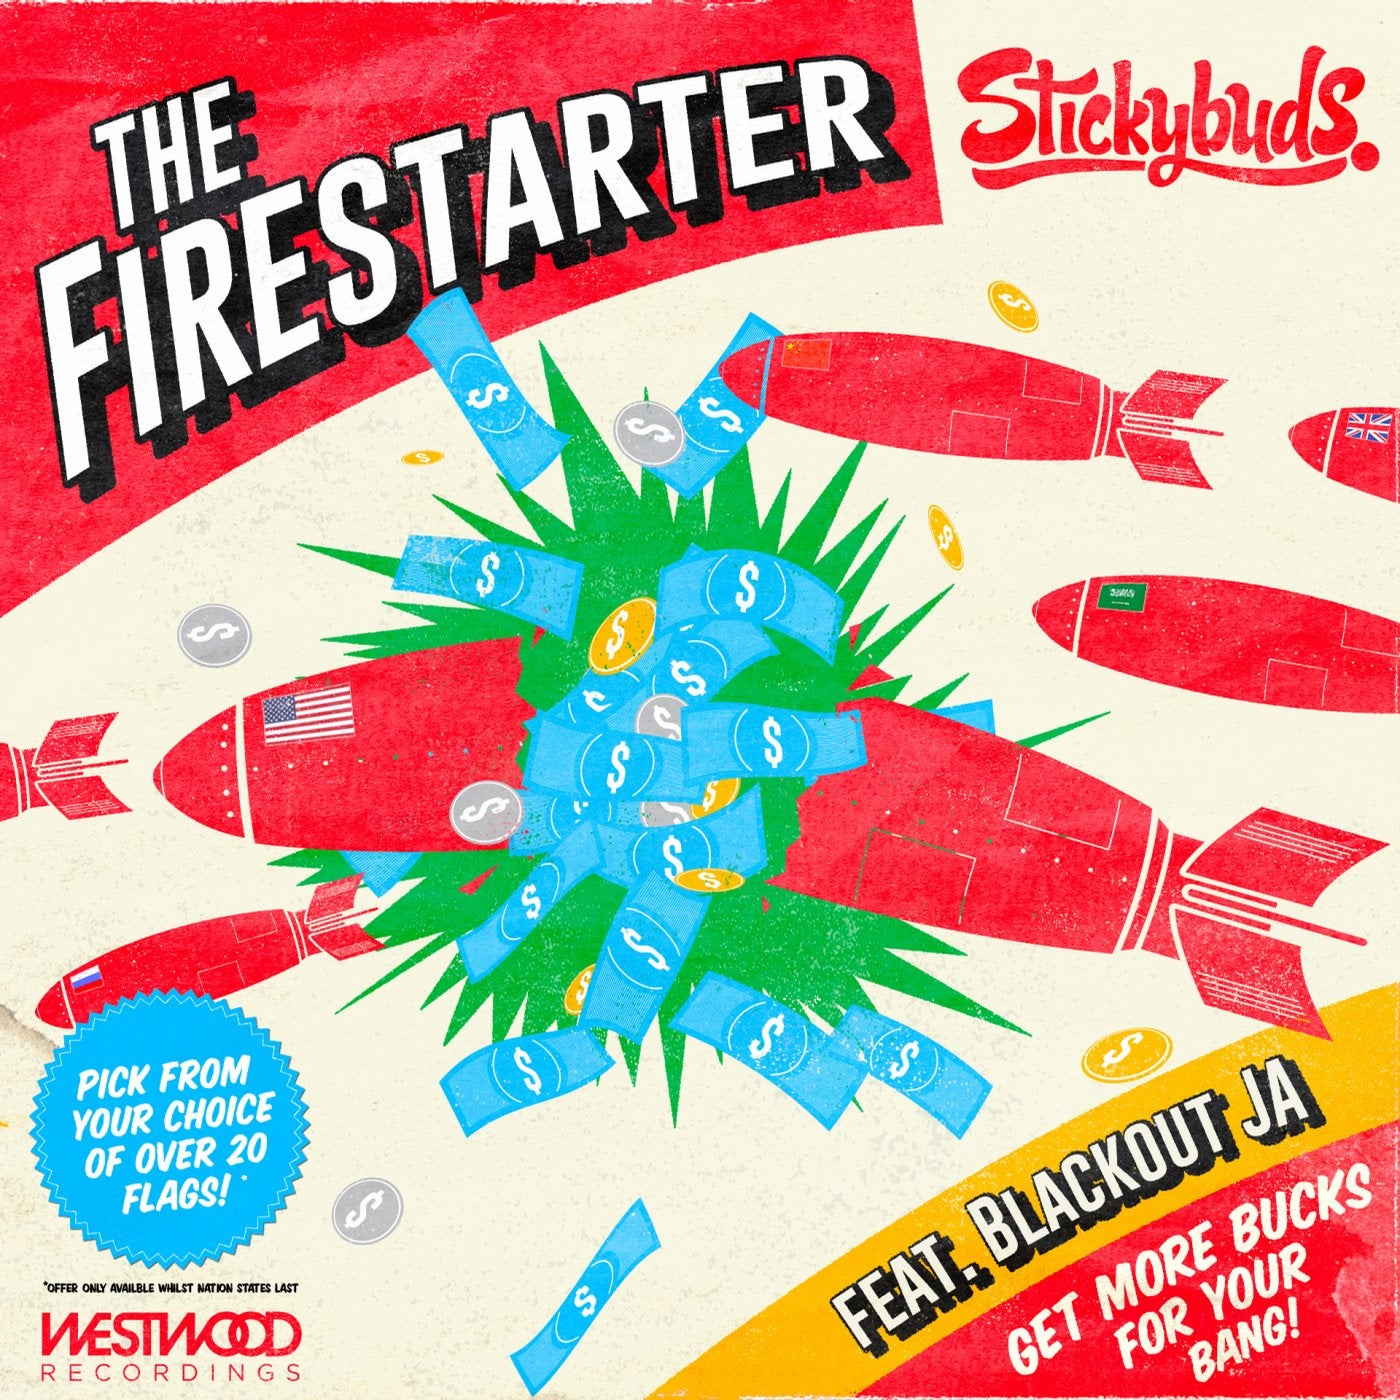 The Firestarter